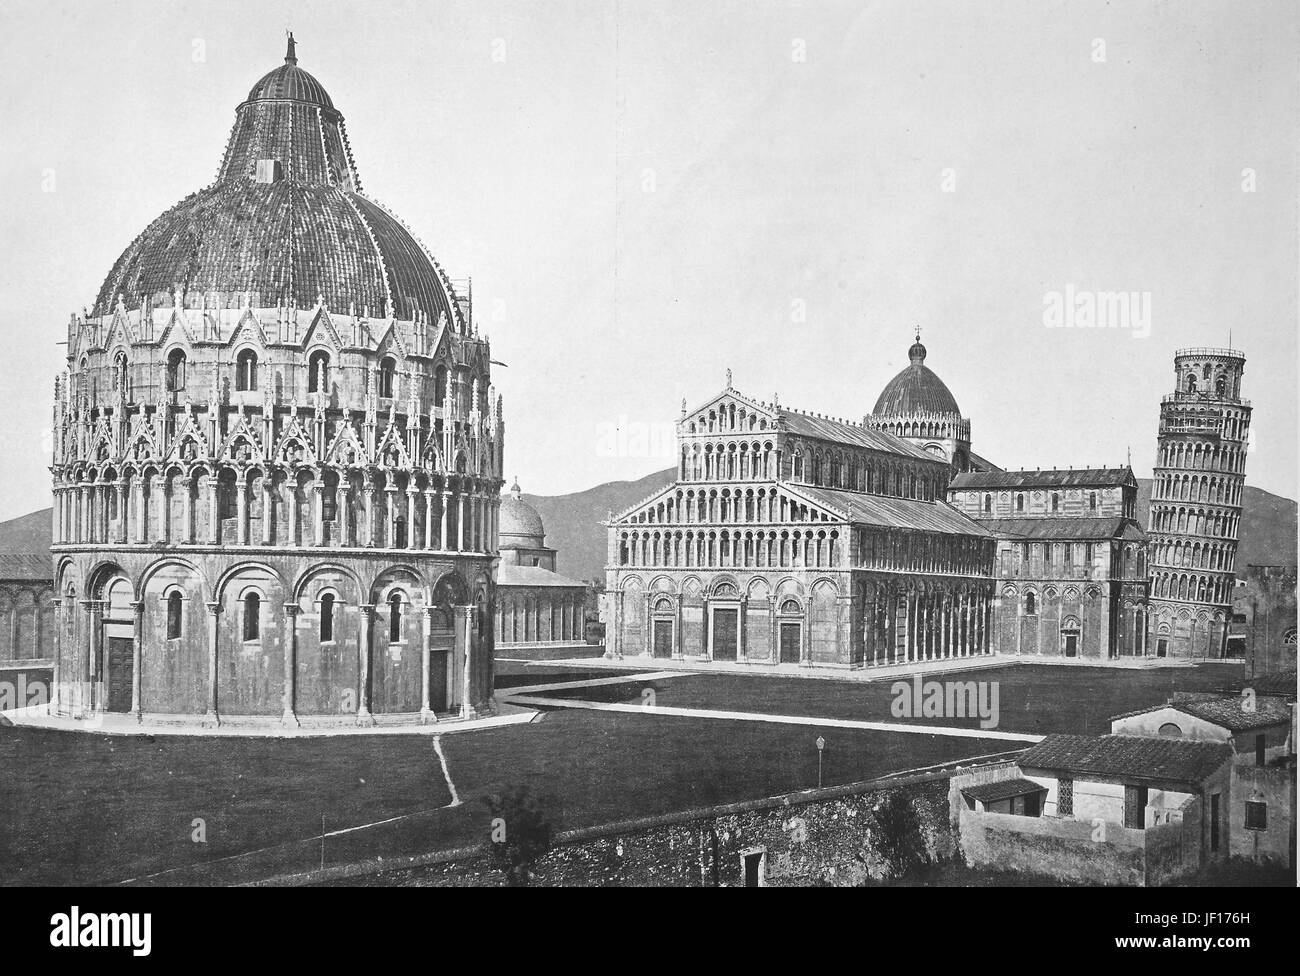 Historisches Foto von Pisa, Blick auf die Piazza dei Miracoli, schiefe Turm von Pisa und Baptisterium, Toskana, Italien, verbesserte digitale Reproduktion aus einer Originalgraphik von 1890 Stockfoto